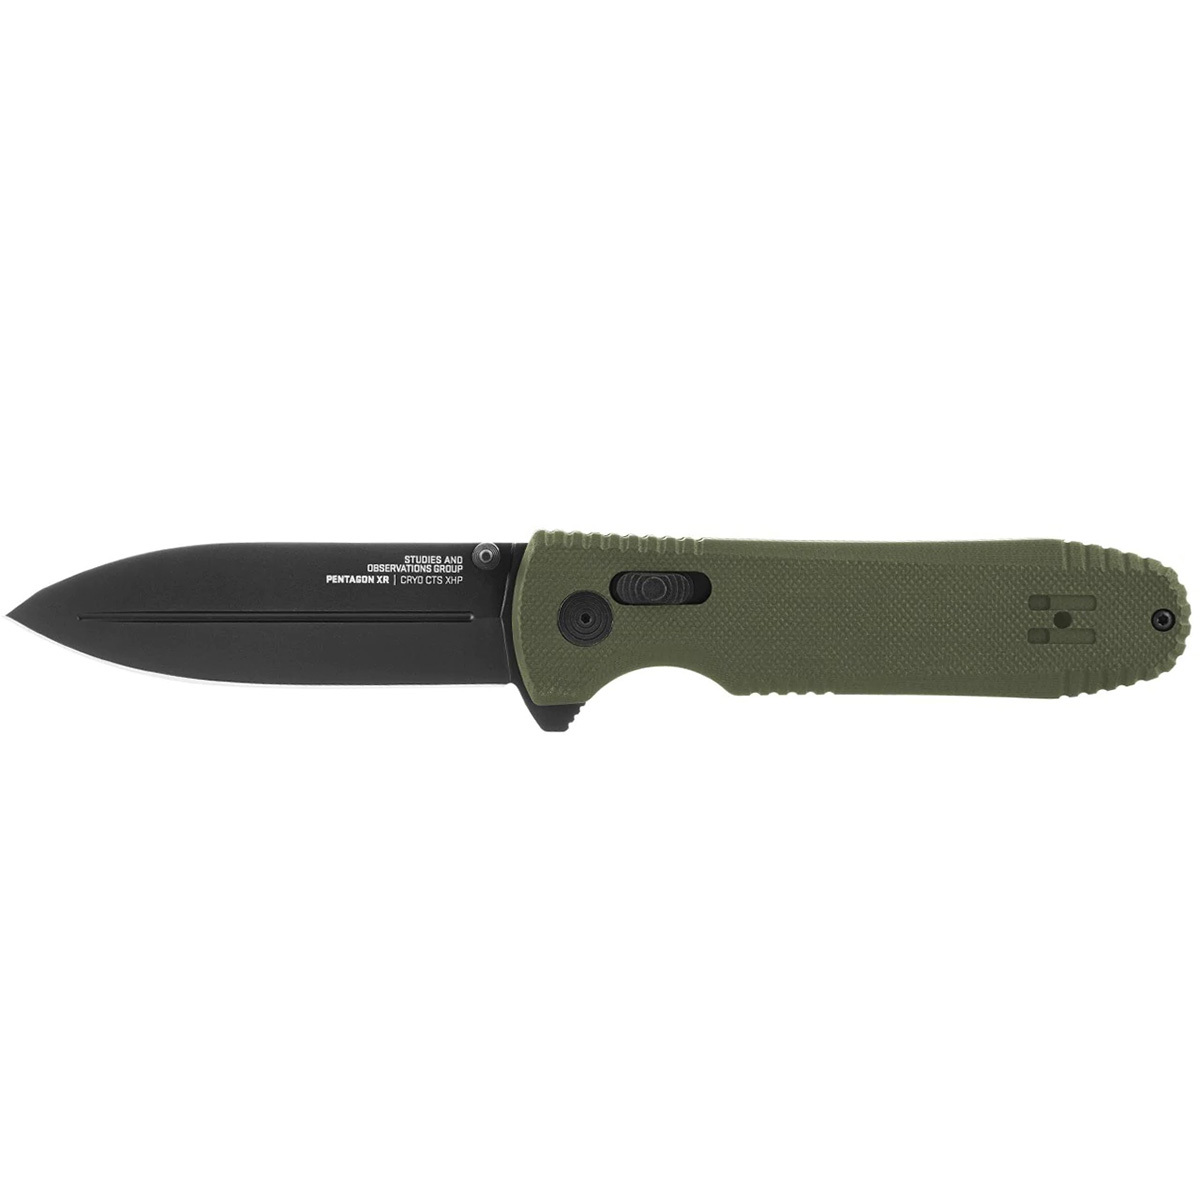 Складной нож SOG Pentagon Mk3 OD Green, сталь  CTS-XHP